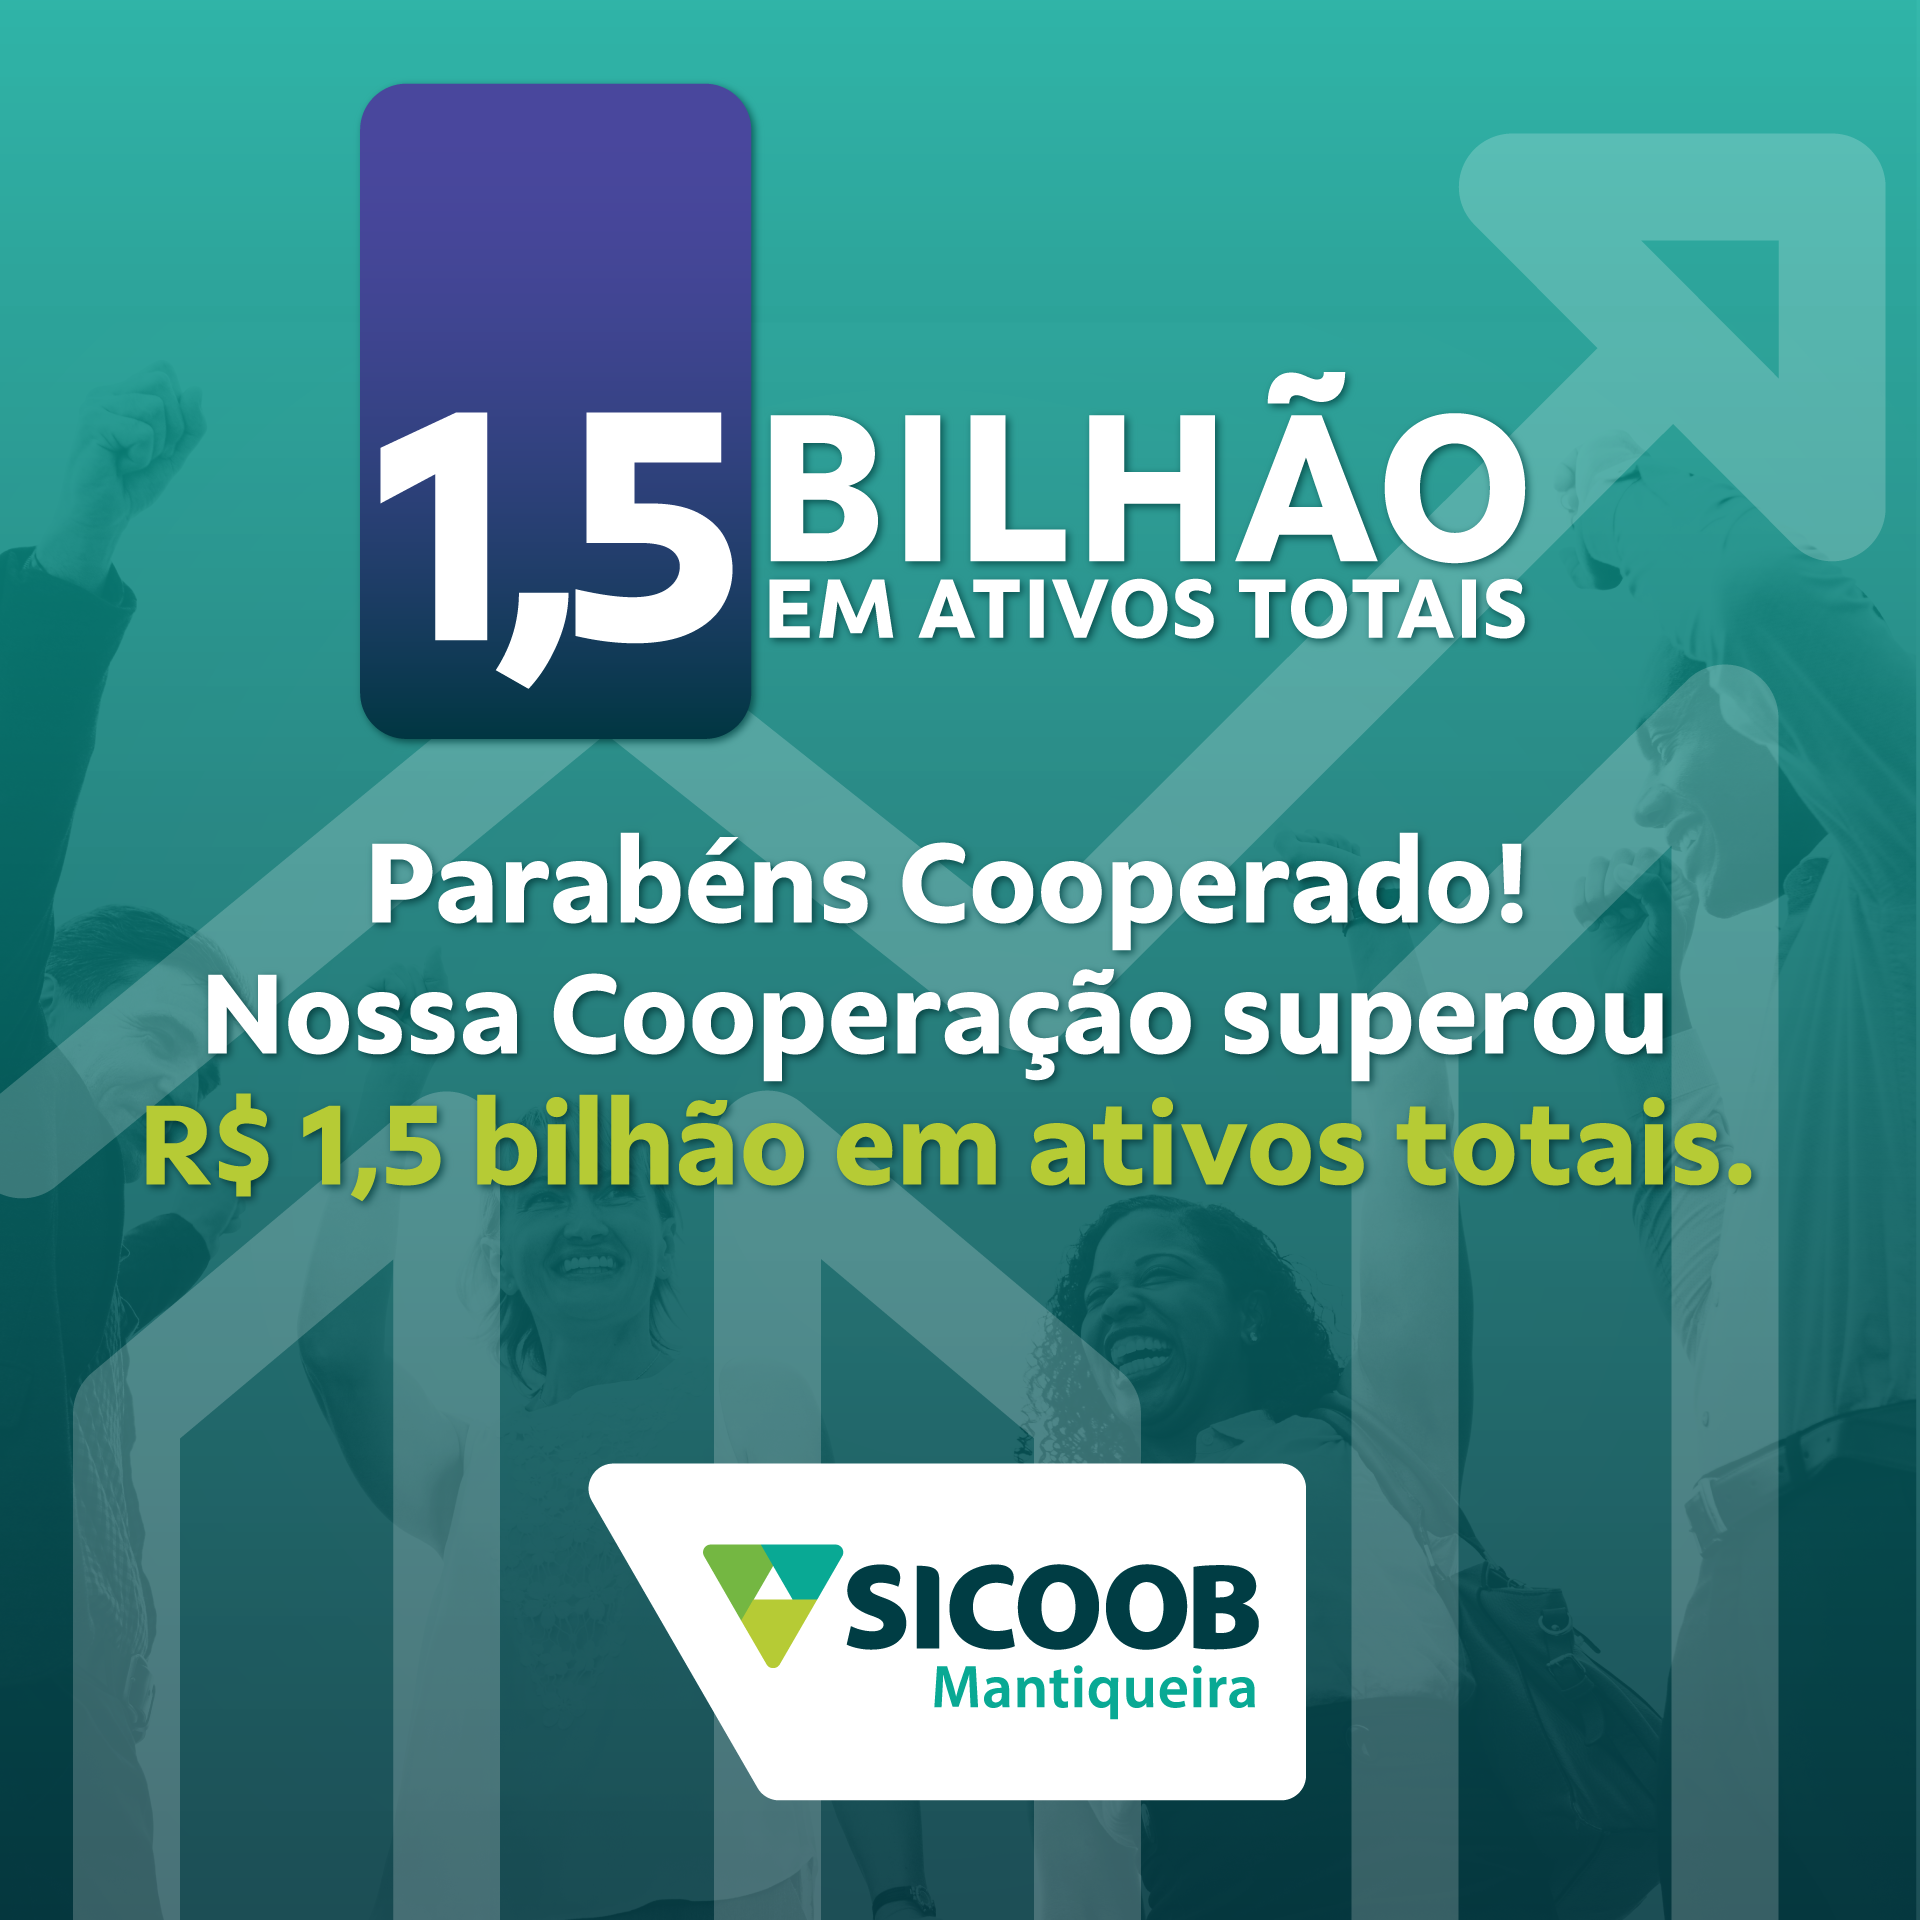 Sicoob Mantiqueira ultrapassa 1,5 bilhão em ativos totais no primeiro trimestre.